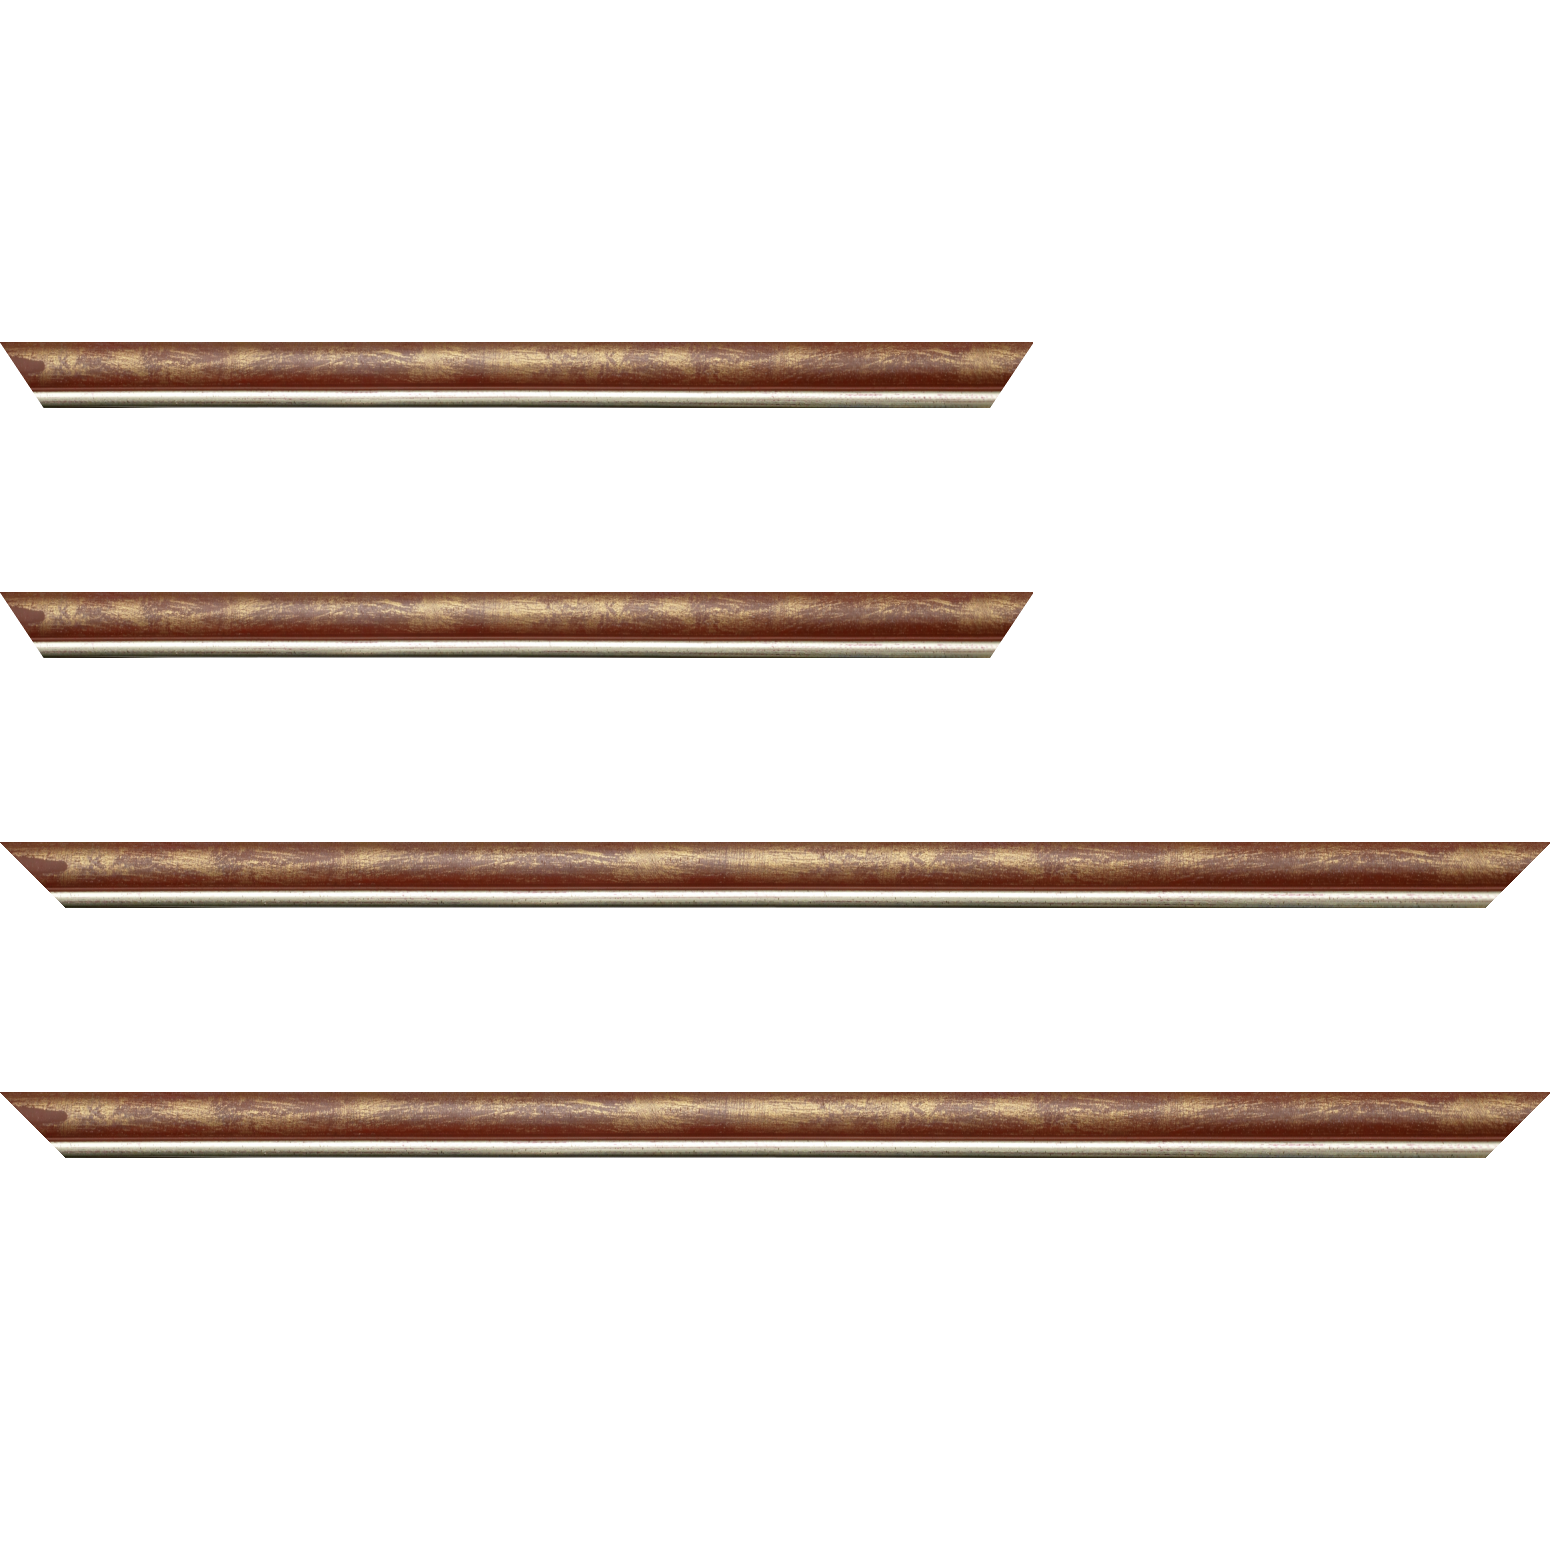 Baguette bois profil arrondi largeur 2.1cm  couleur bordeaux fond or filet argent chaud - 50x60